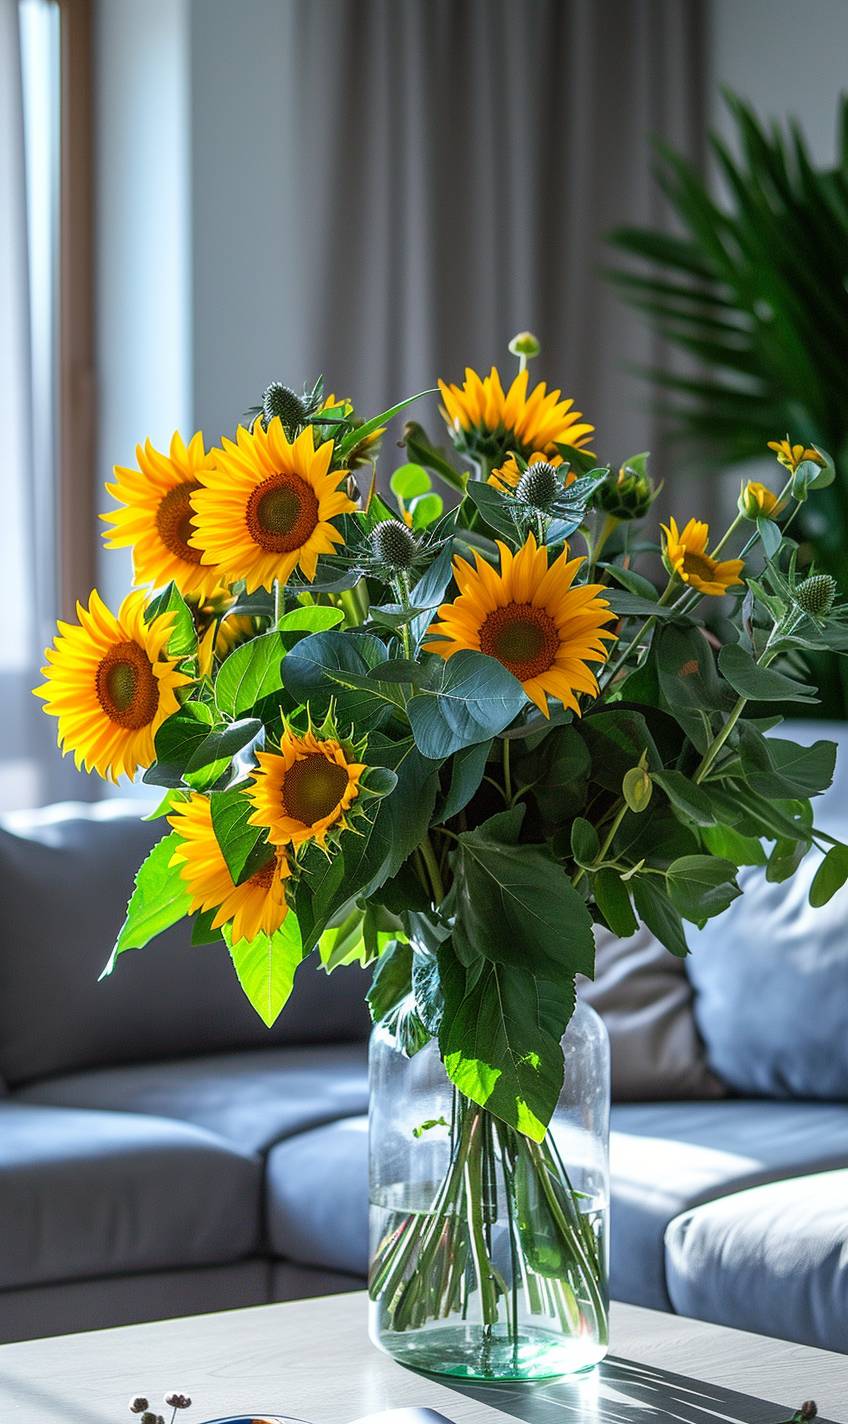 美しい静物アレンジメントを特徴とする向日葵の花束がテーブルにある花瓶に収められた現代のアパートメントで撮影された、高品質のカメラで撮影された写真。